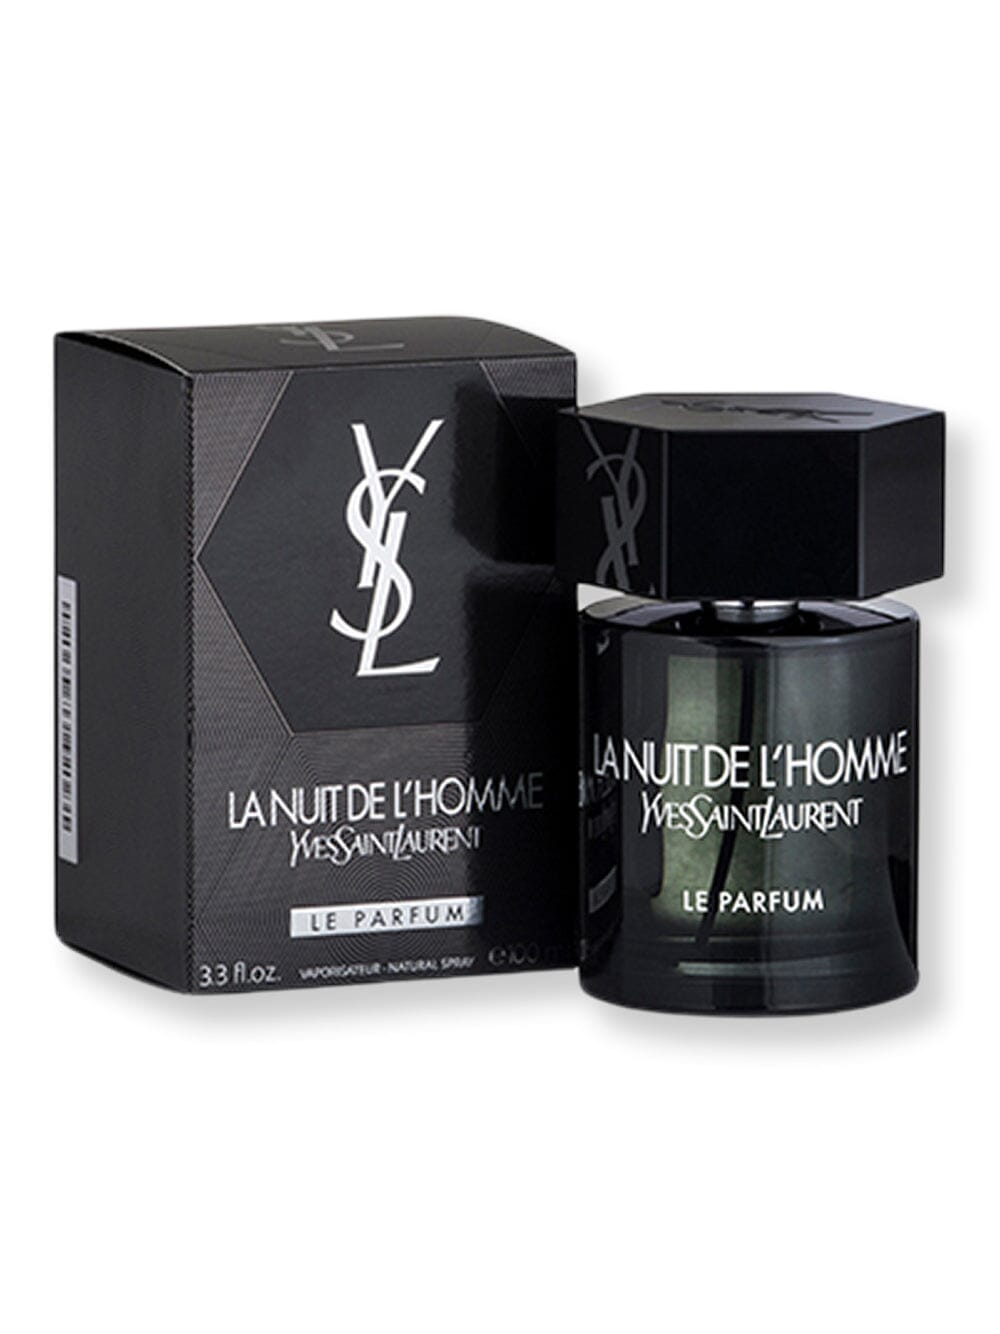 Yves Saint Laurent Yves Saint Laurent Lanuit De L'homme Le Parfum Spray 3.3 oz100 ml Perfume 